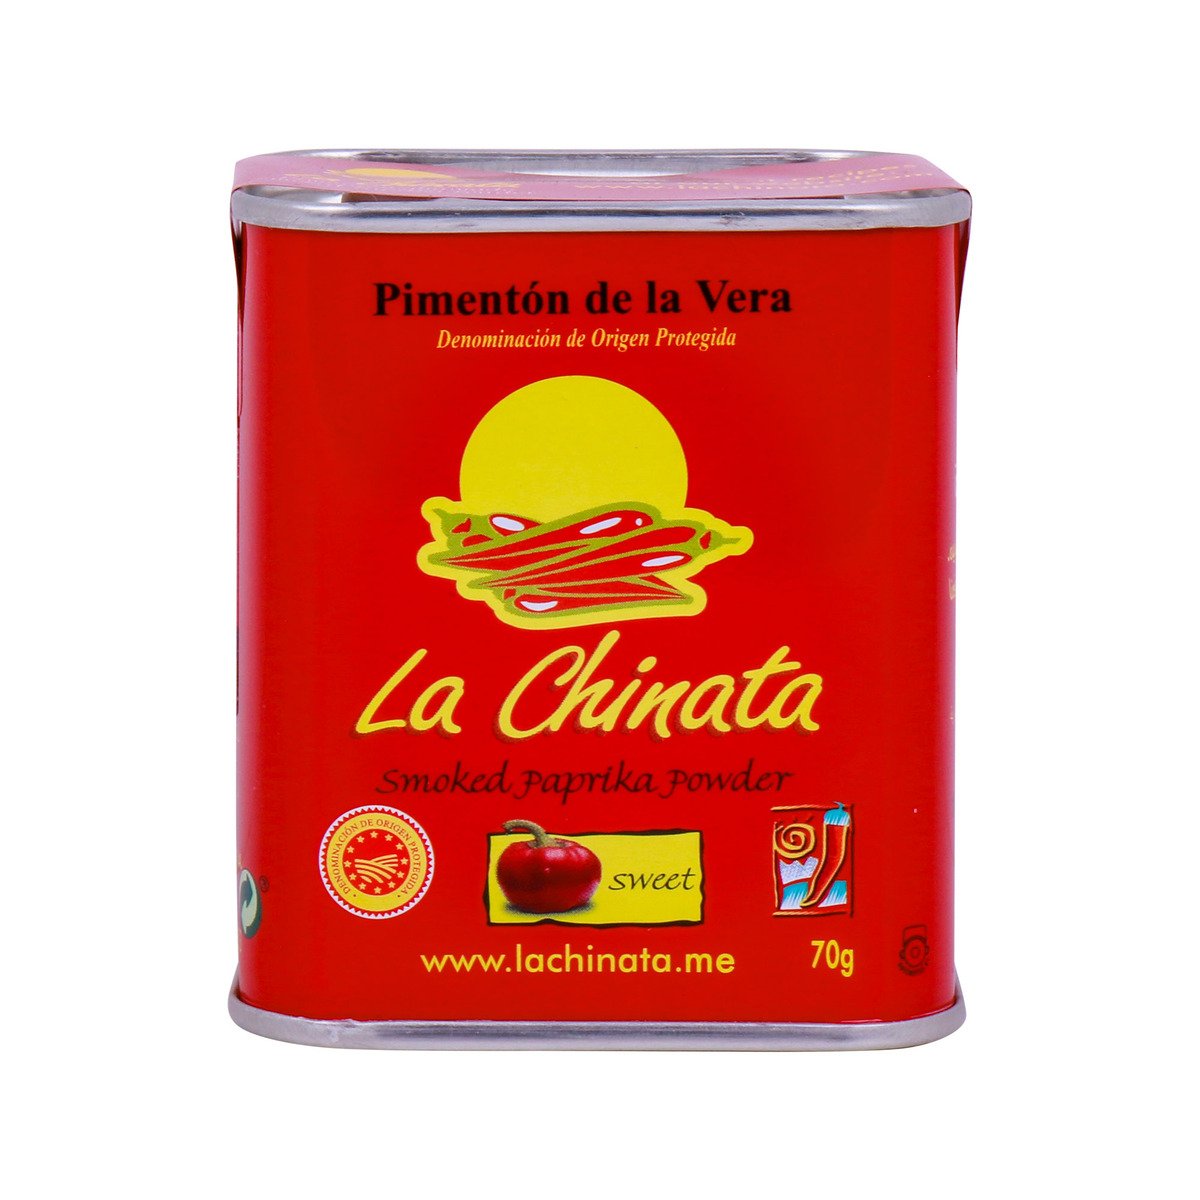 La Chinata Smoked Paprika Powder Sweet 70 g